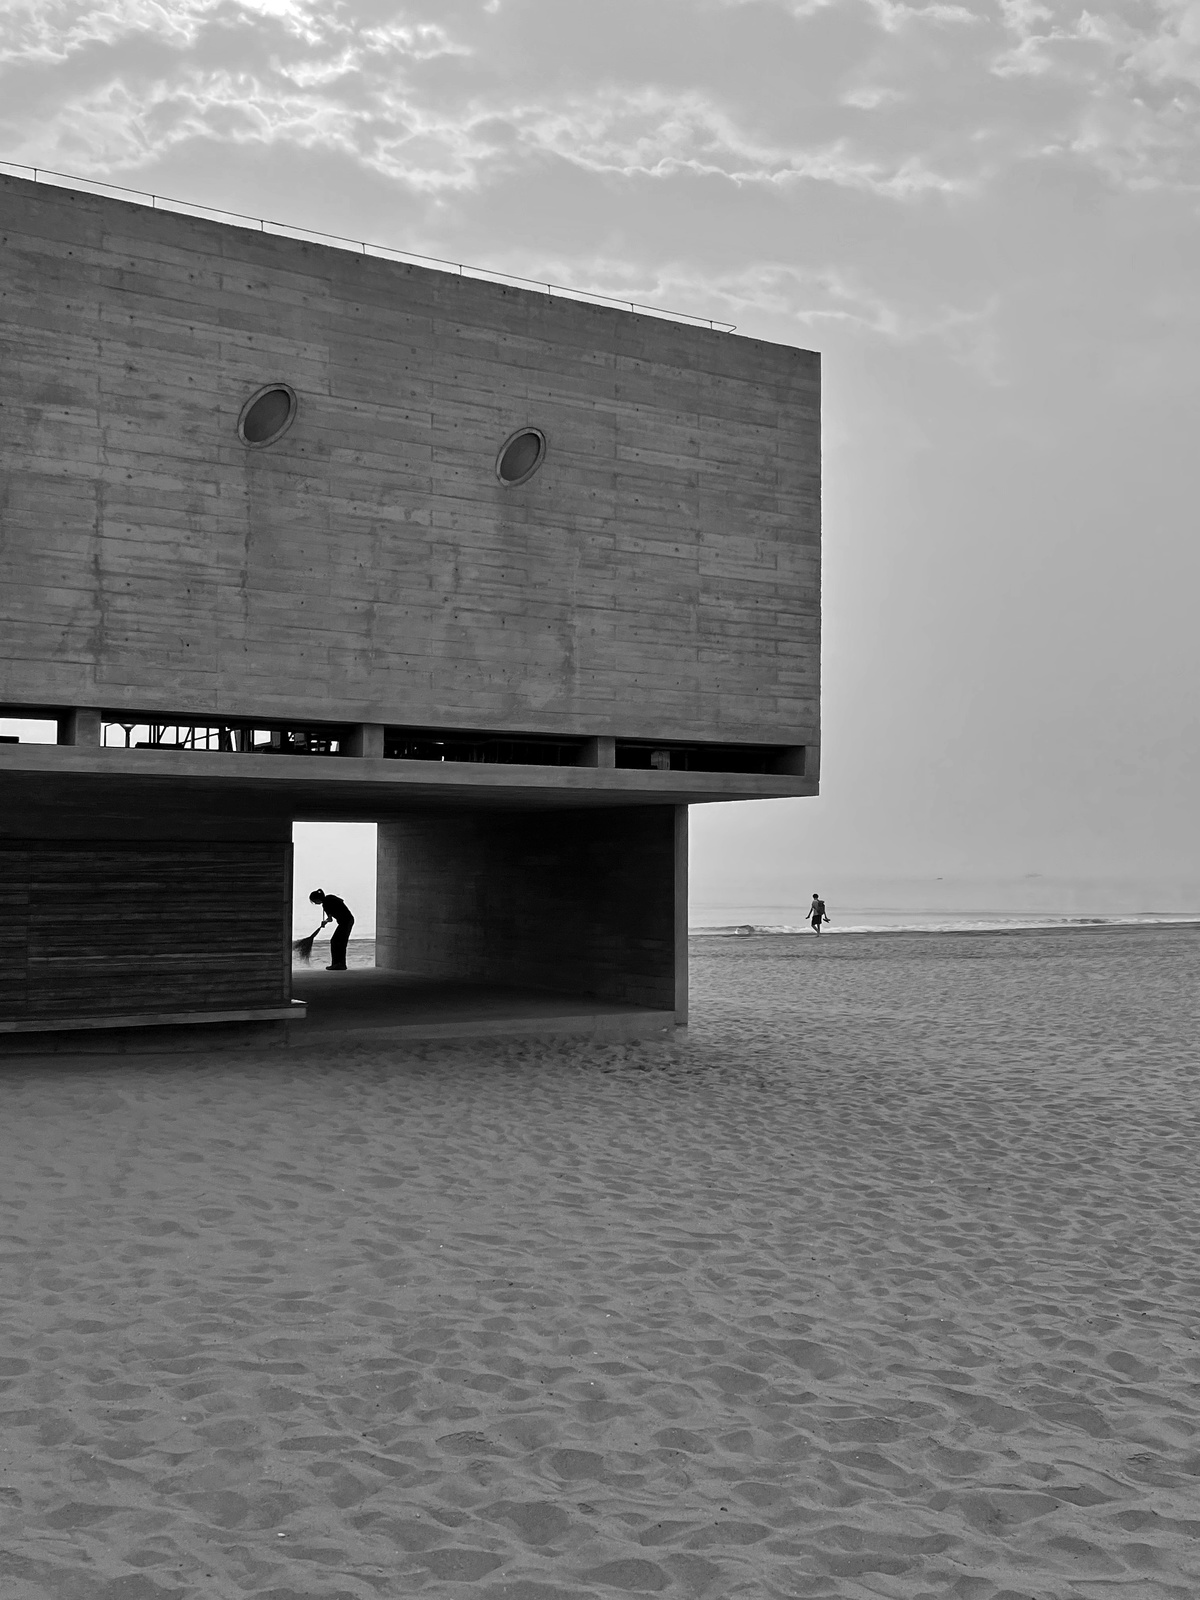 黑白照片 一个人在建筑附近的沙滩上滑板